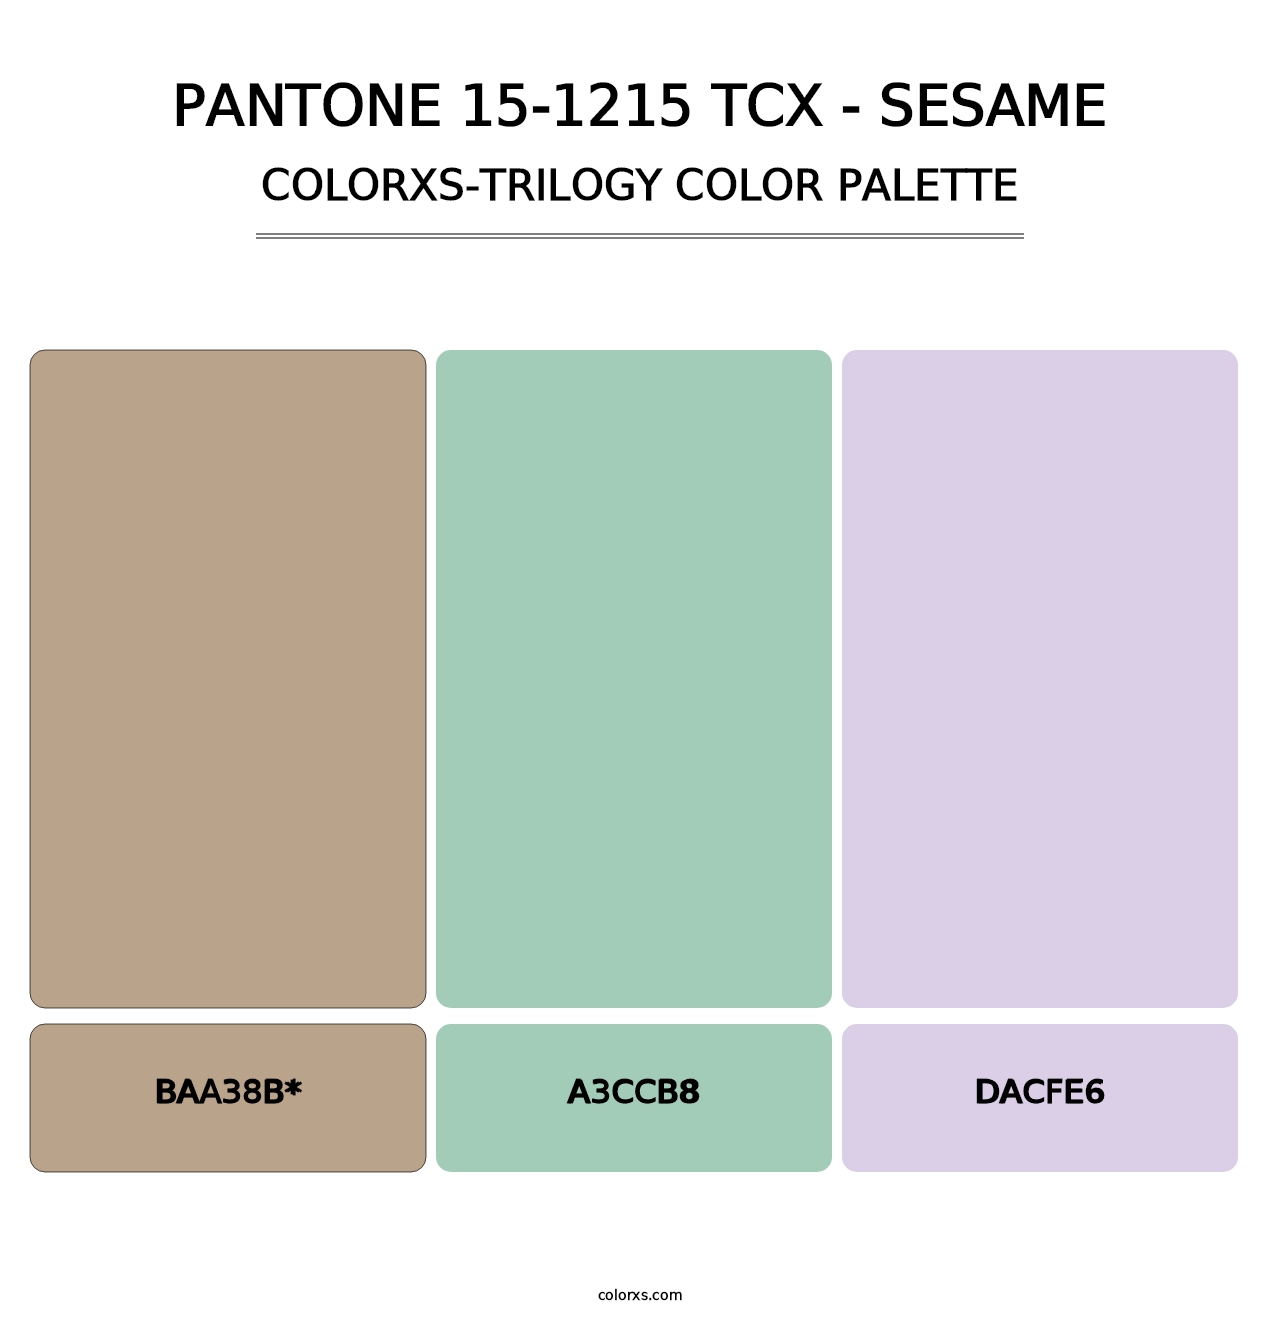 PANTONE 15-1215 TCX - Sesame - Colorxs Trilogy Palette